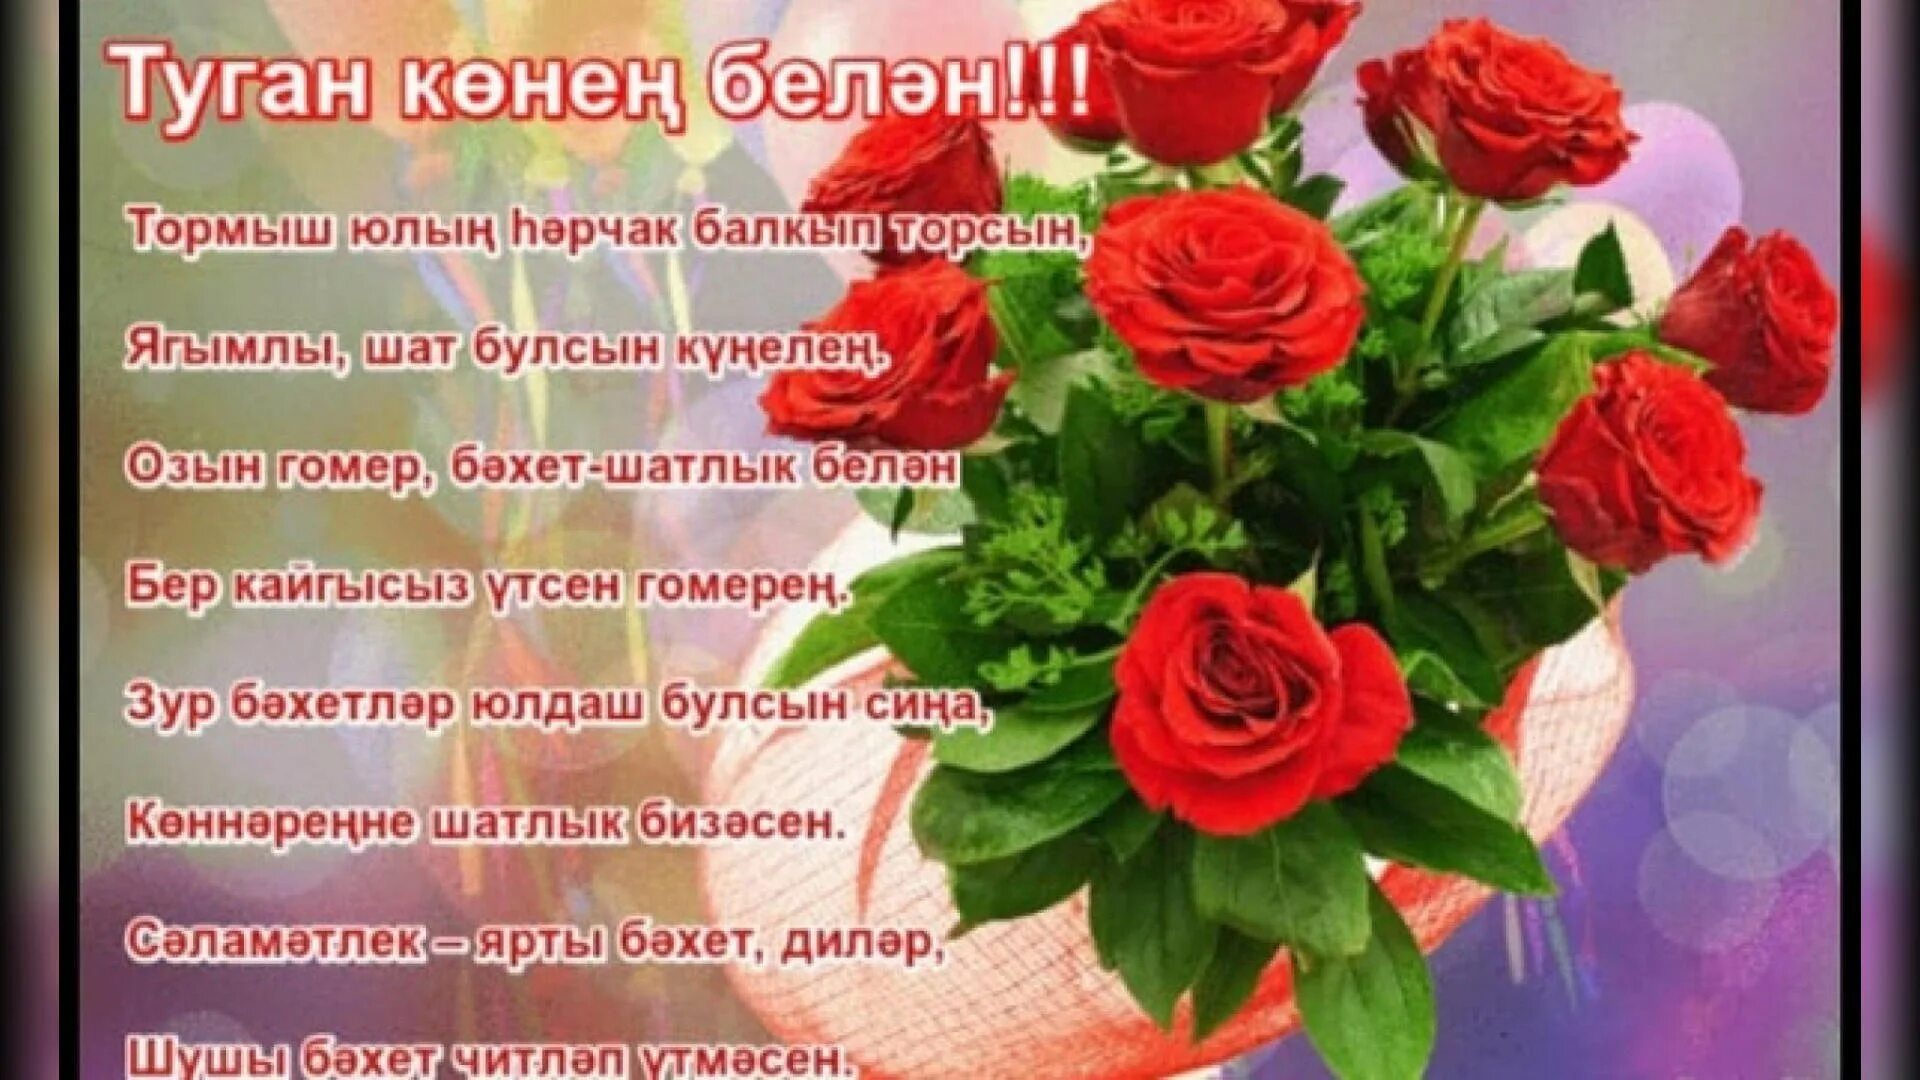 Поздравление туган конен. Татарские поздравления с днем рождения. Поздравления с днём рождения на татарском языке. Поздравления с днём рождения женщине на татарском языке. Поздравления с днём рождения женщине на татарском.